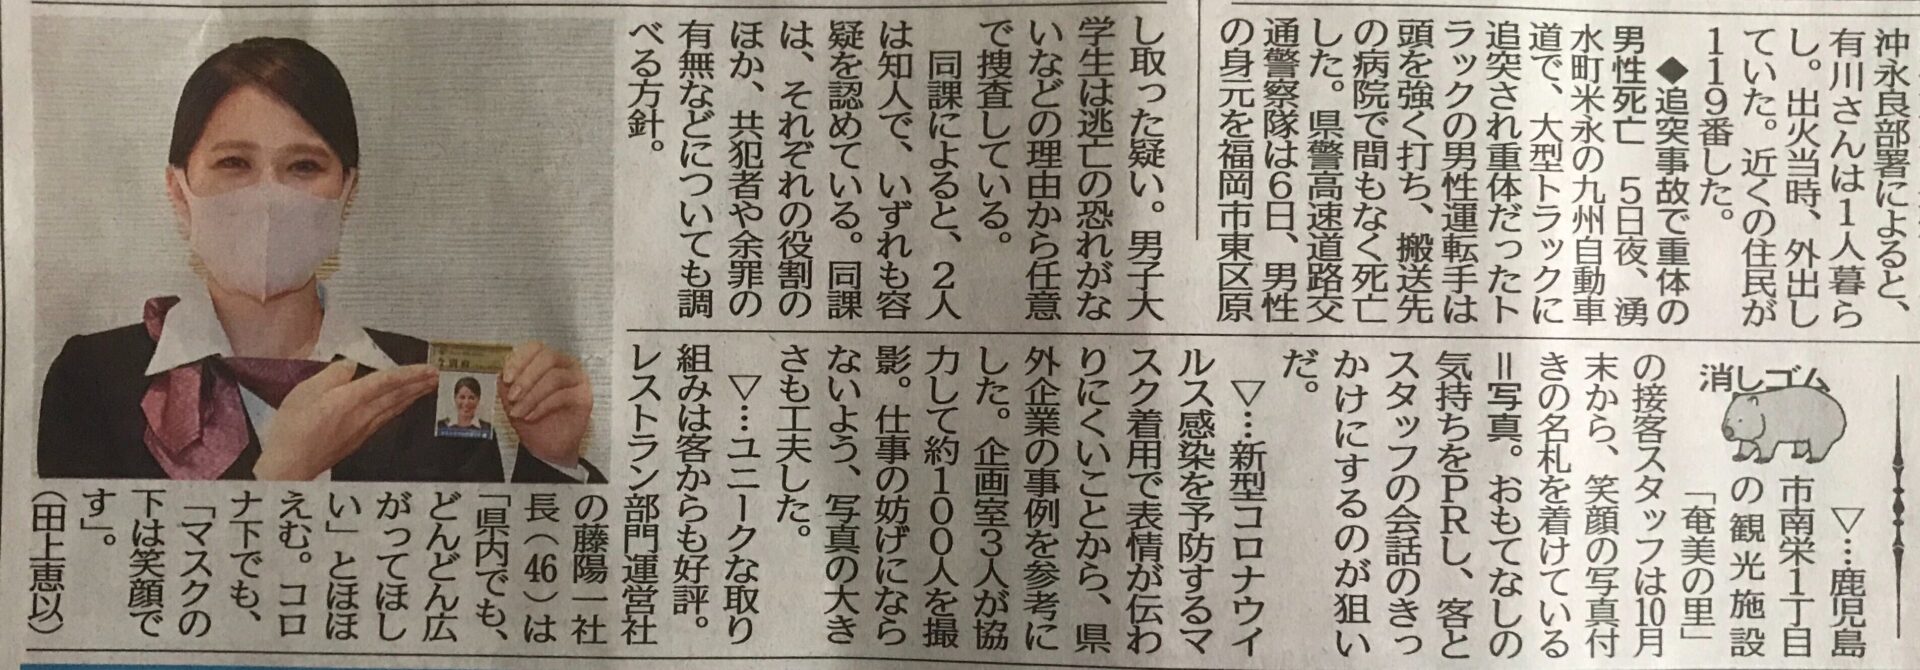 南日本新聞・コロナ禍の取り組みが紹介されました